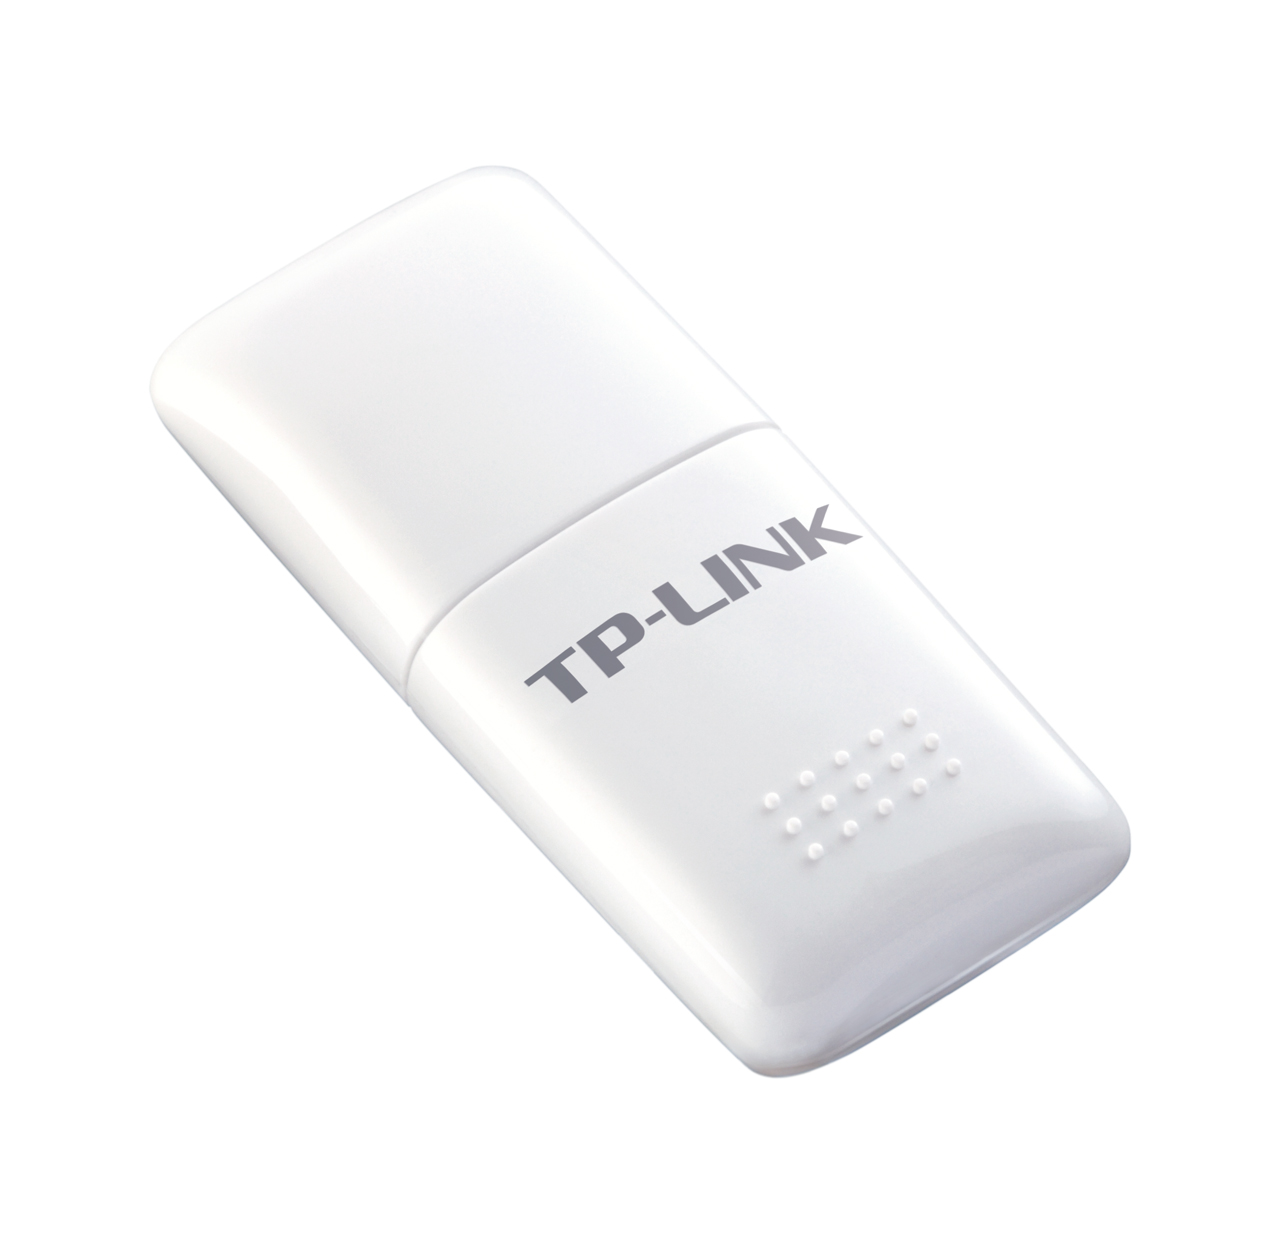 Download driver tp-link tl-wn722n 150 mbps